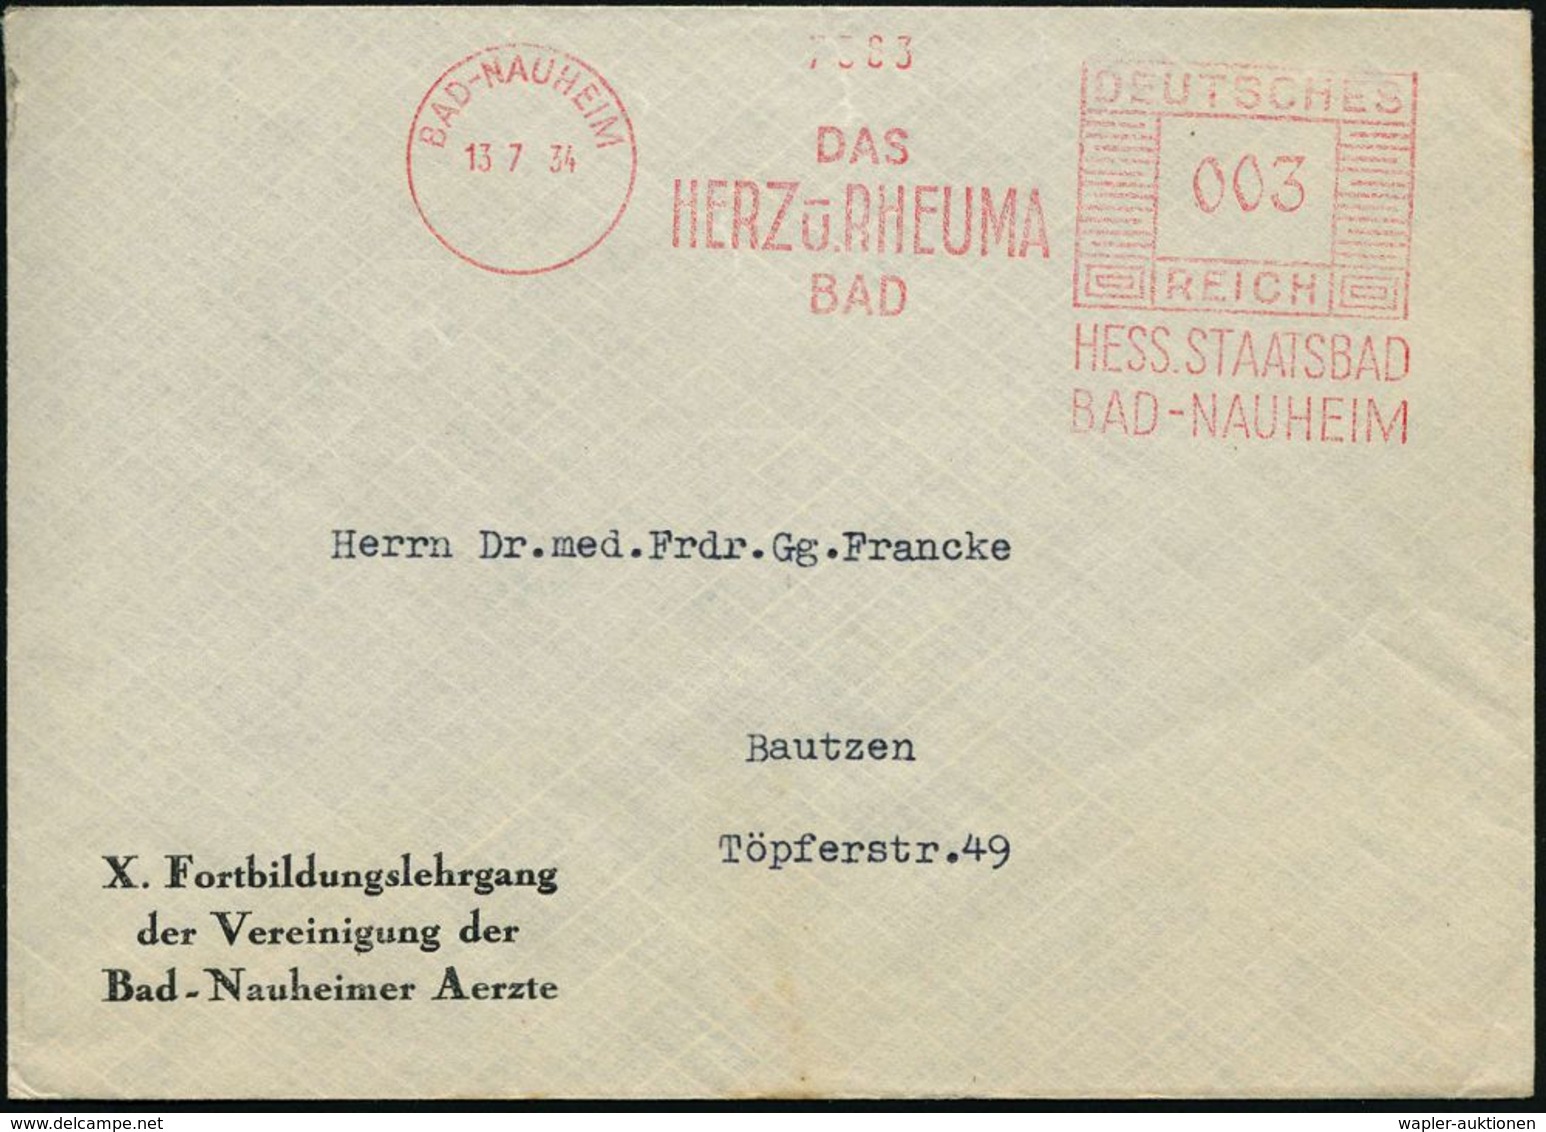 RHEUMATISMUS : BAD-NAUHEIM/ DAS/ HERZ U.RHEUMA/ BAD/ HESS.STAATSBAD.. 1934 (13.7.) AFS Auf Vordruck-Bf.: X. Fortbildungs - Malattie